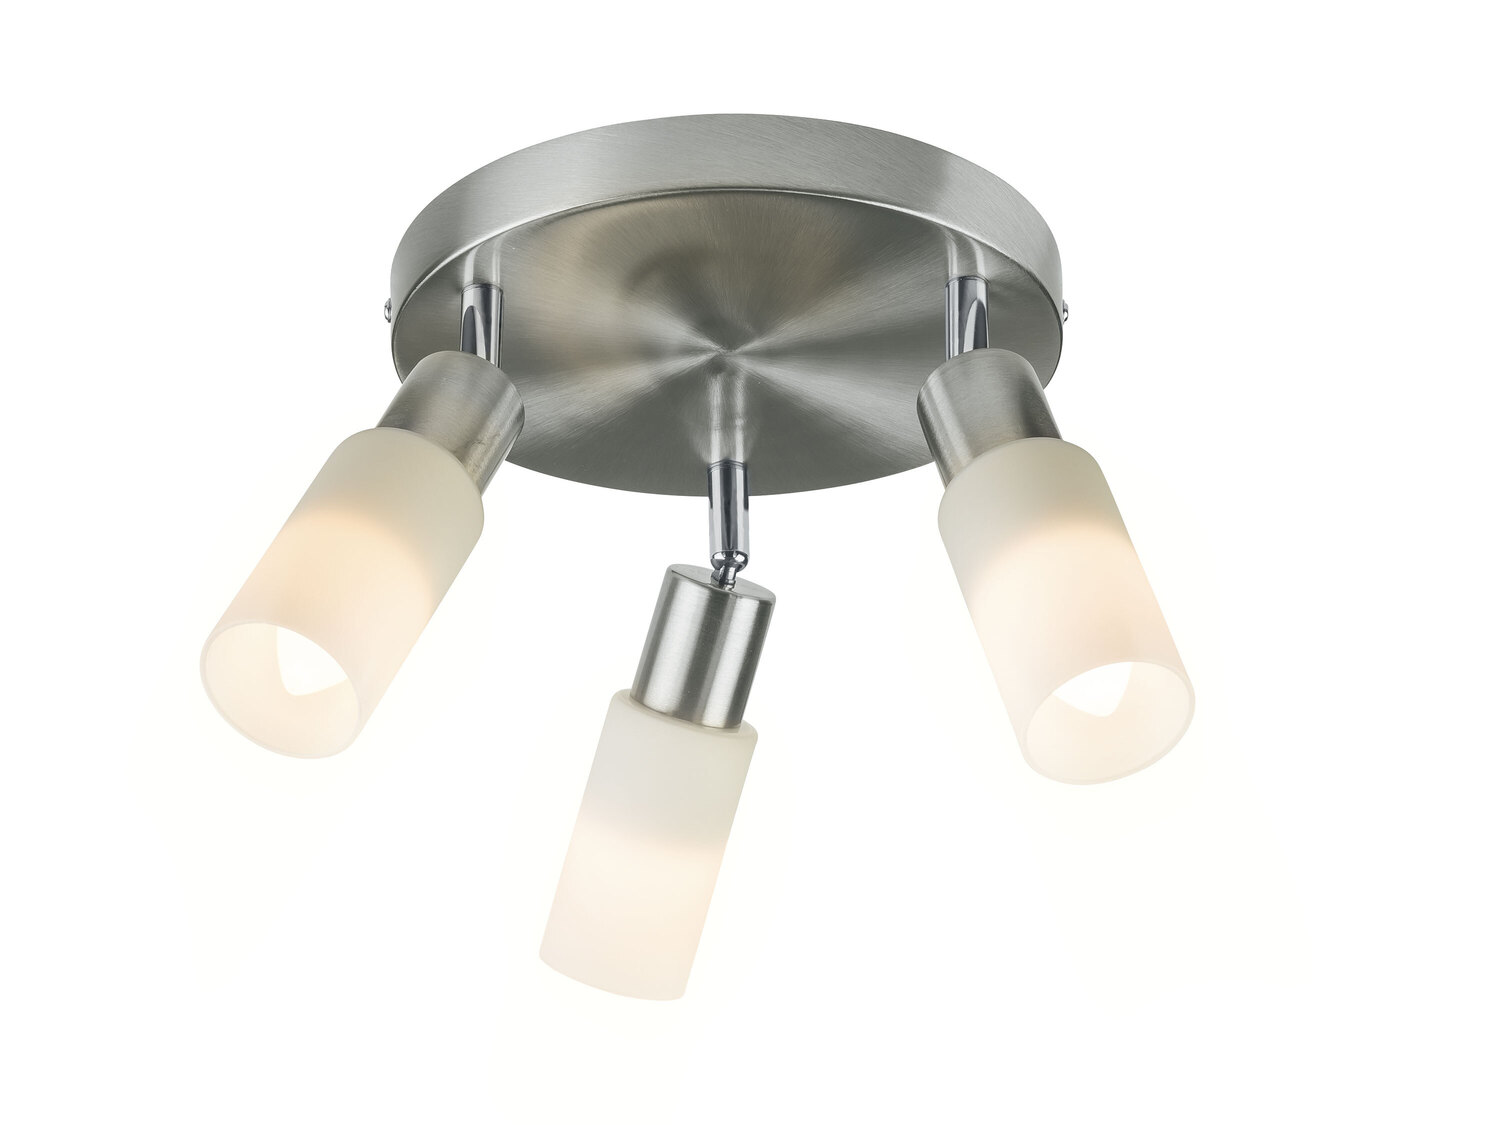 Lampa sufitowa LED Livarno, cena 69,90 PLN 
- o wyglądzie matowego niklu
- klosze ...